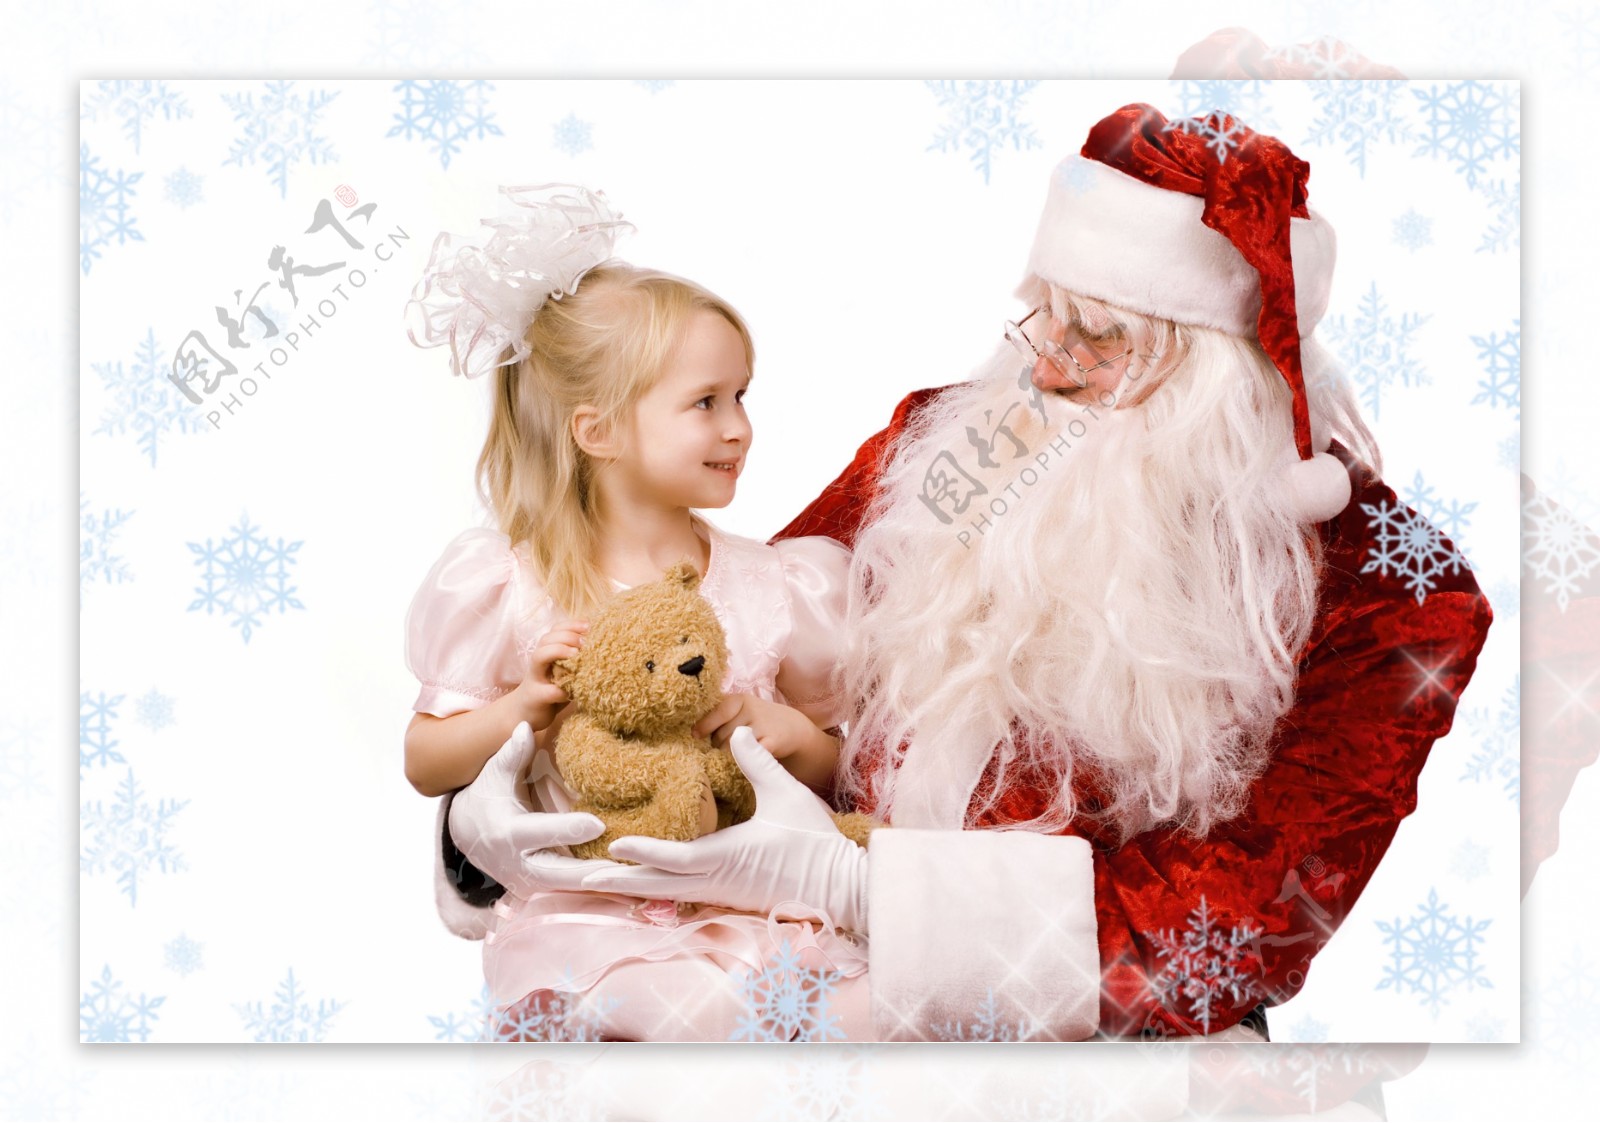 圣诞老人与圣诞女孩图片